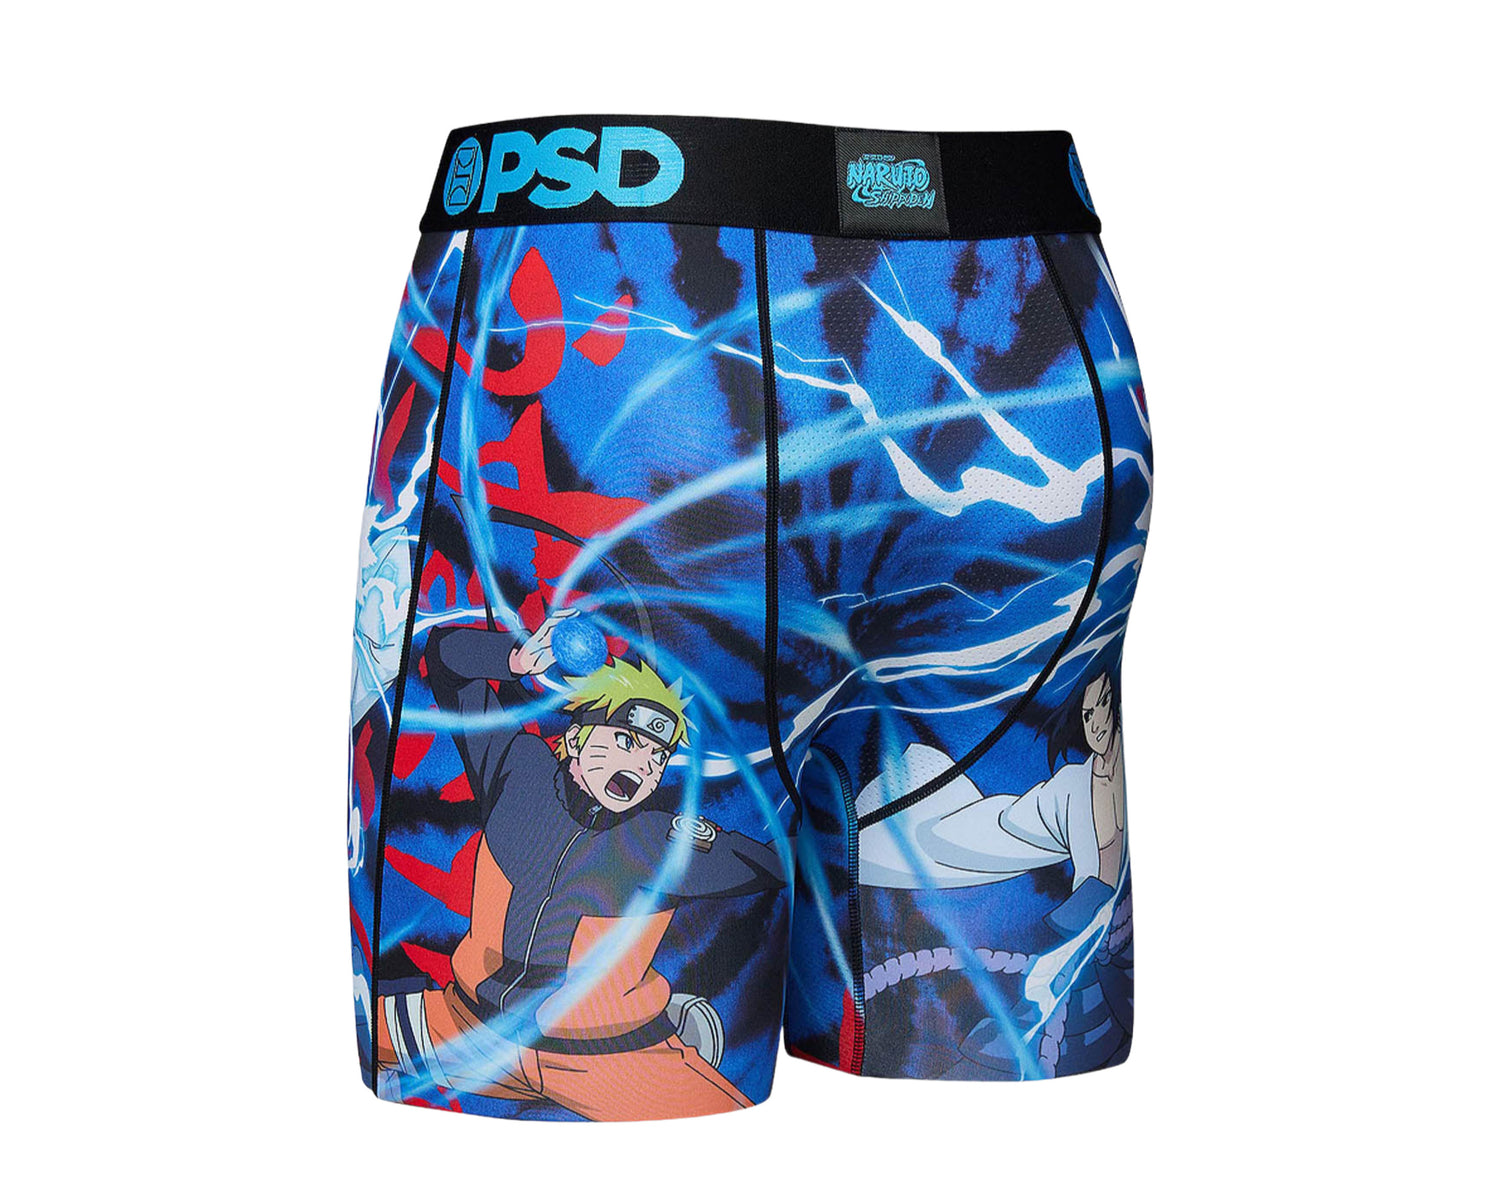 PSD x Naruto - Sasuke Faceoff Boxer Briefs Men's Underwear